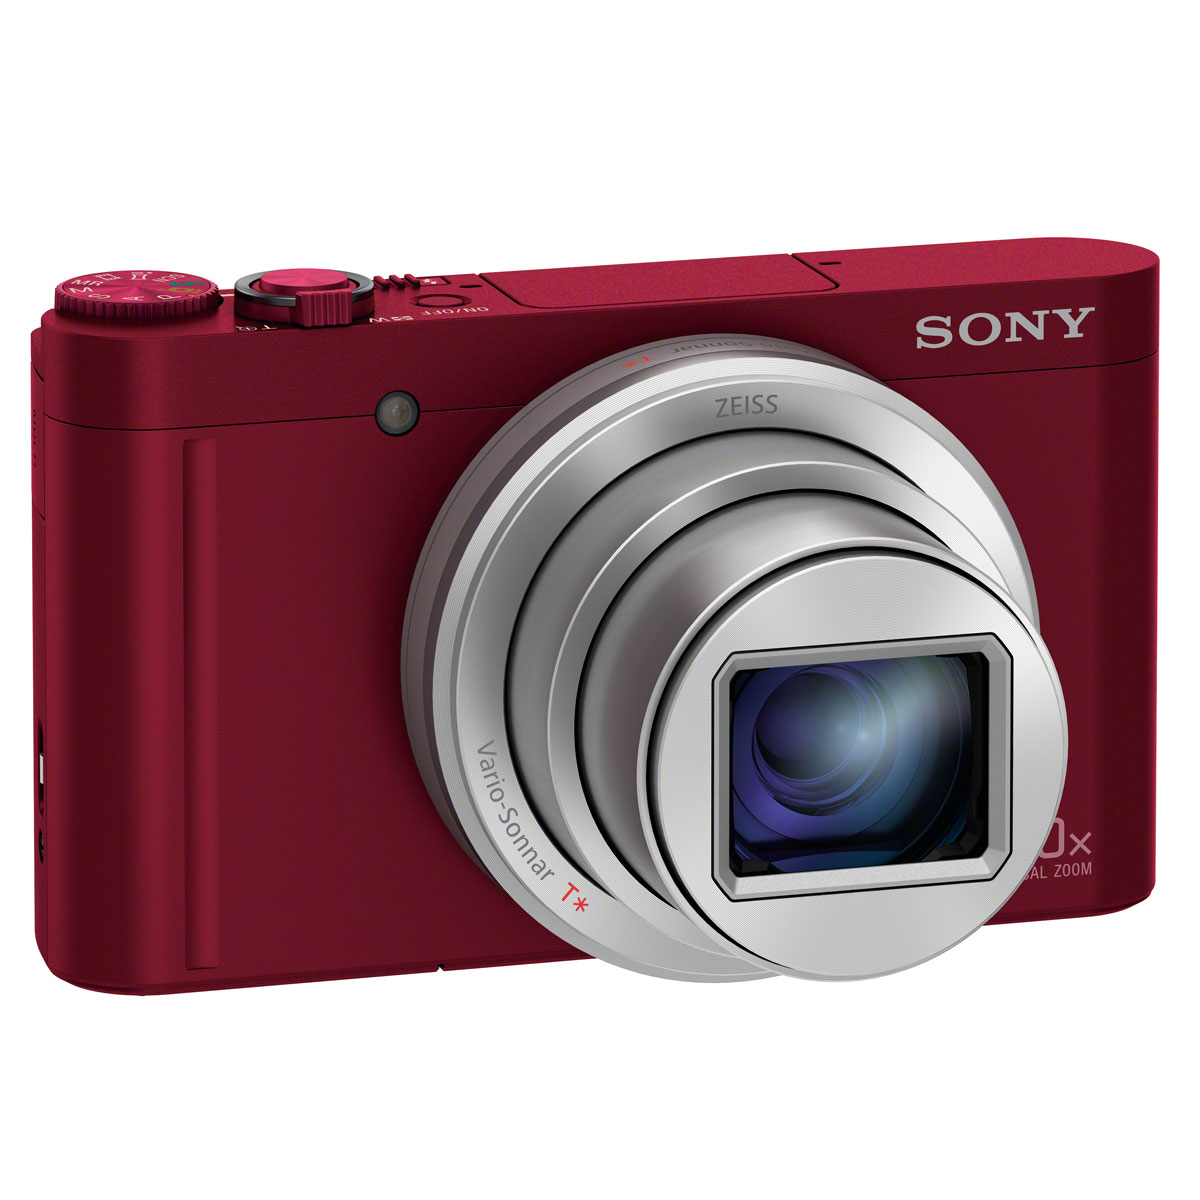 Sony Cyber-shot DSC-WX500 相機規格、價錢及介紹文-